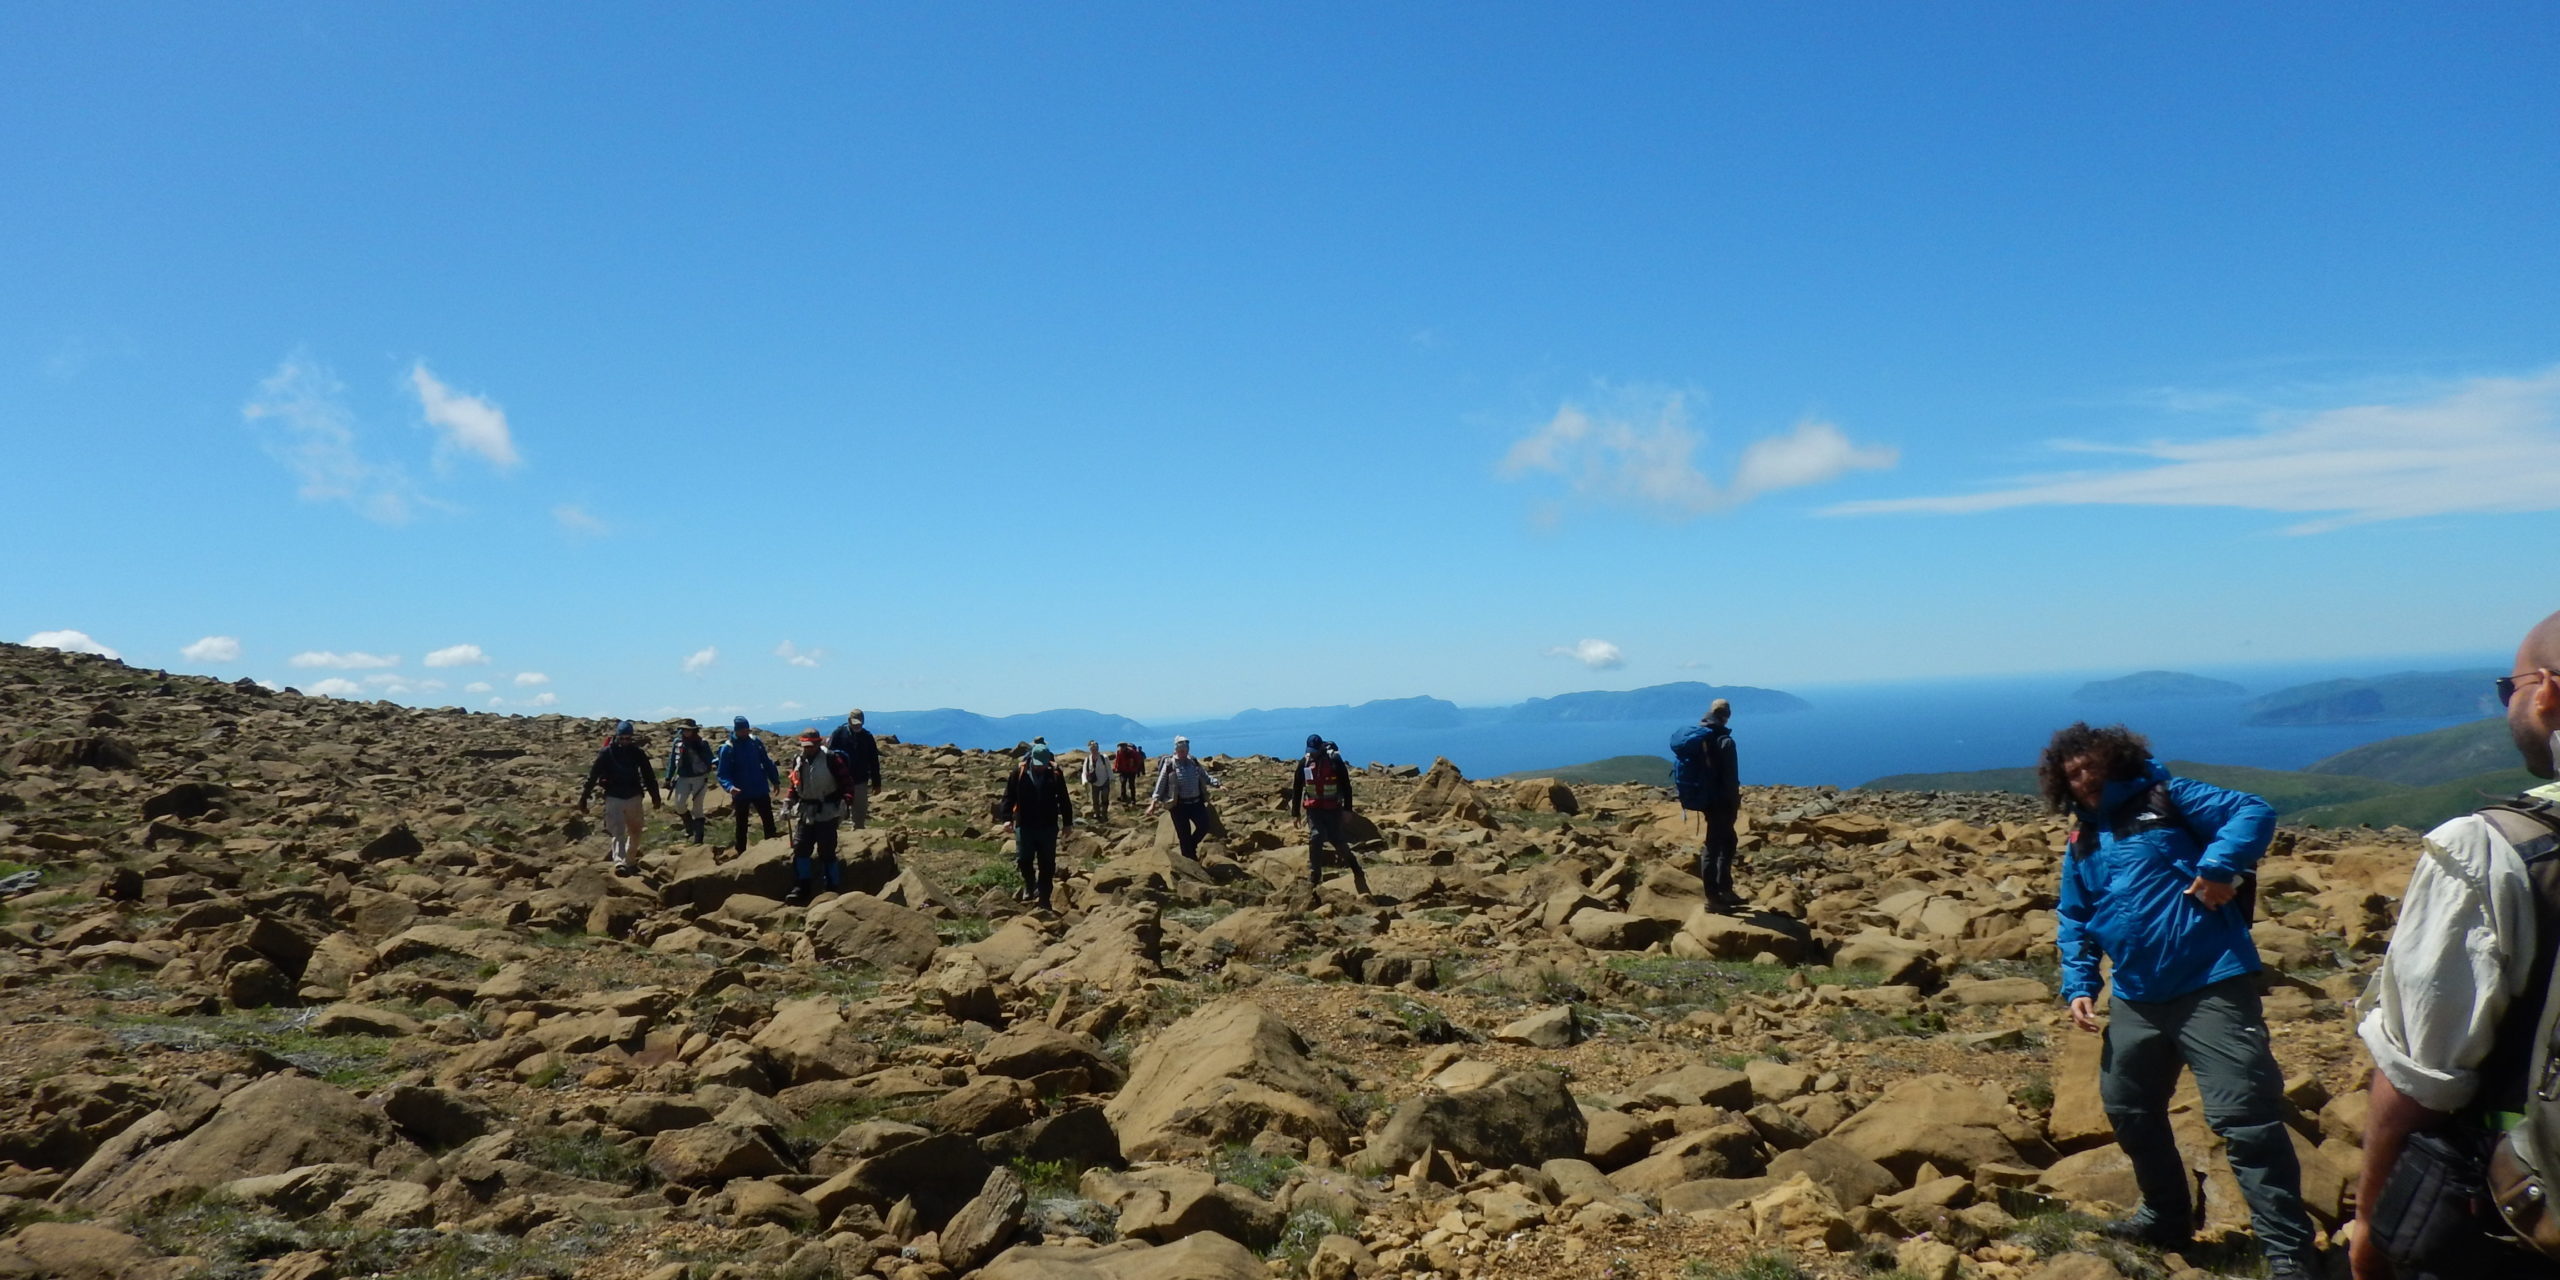 Un groupe de personnes font une randonnée, ils marchent sur des grandes roches brunes sous un ciel bleu pâle.